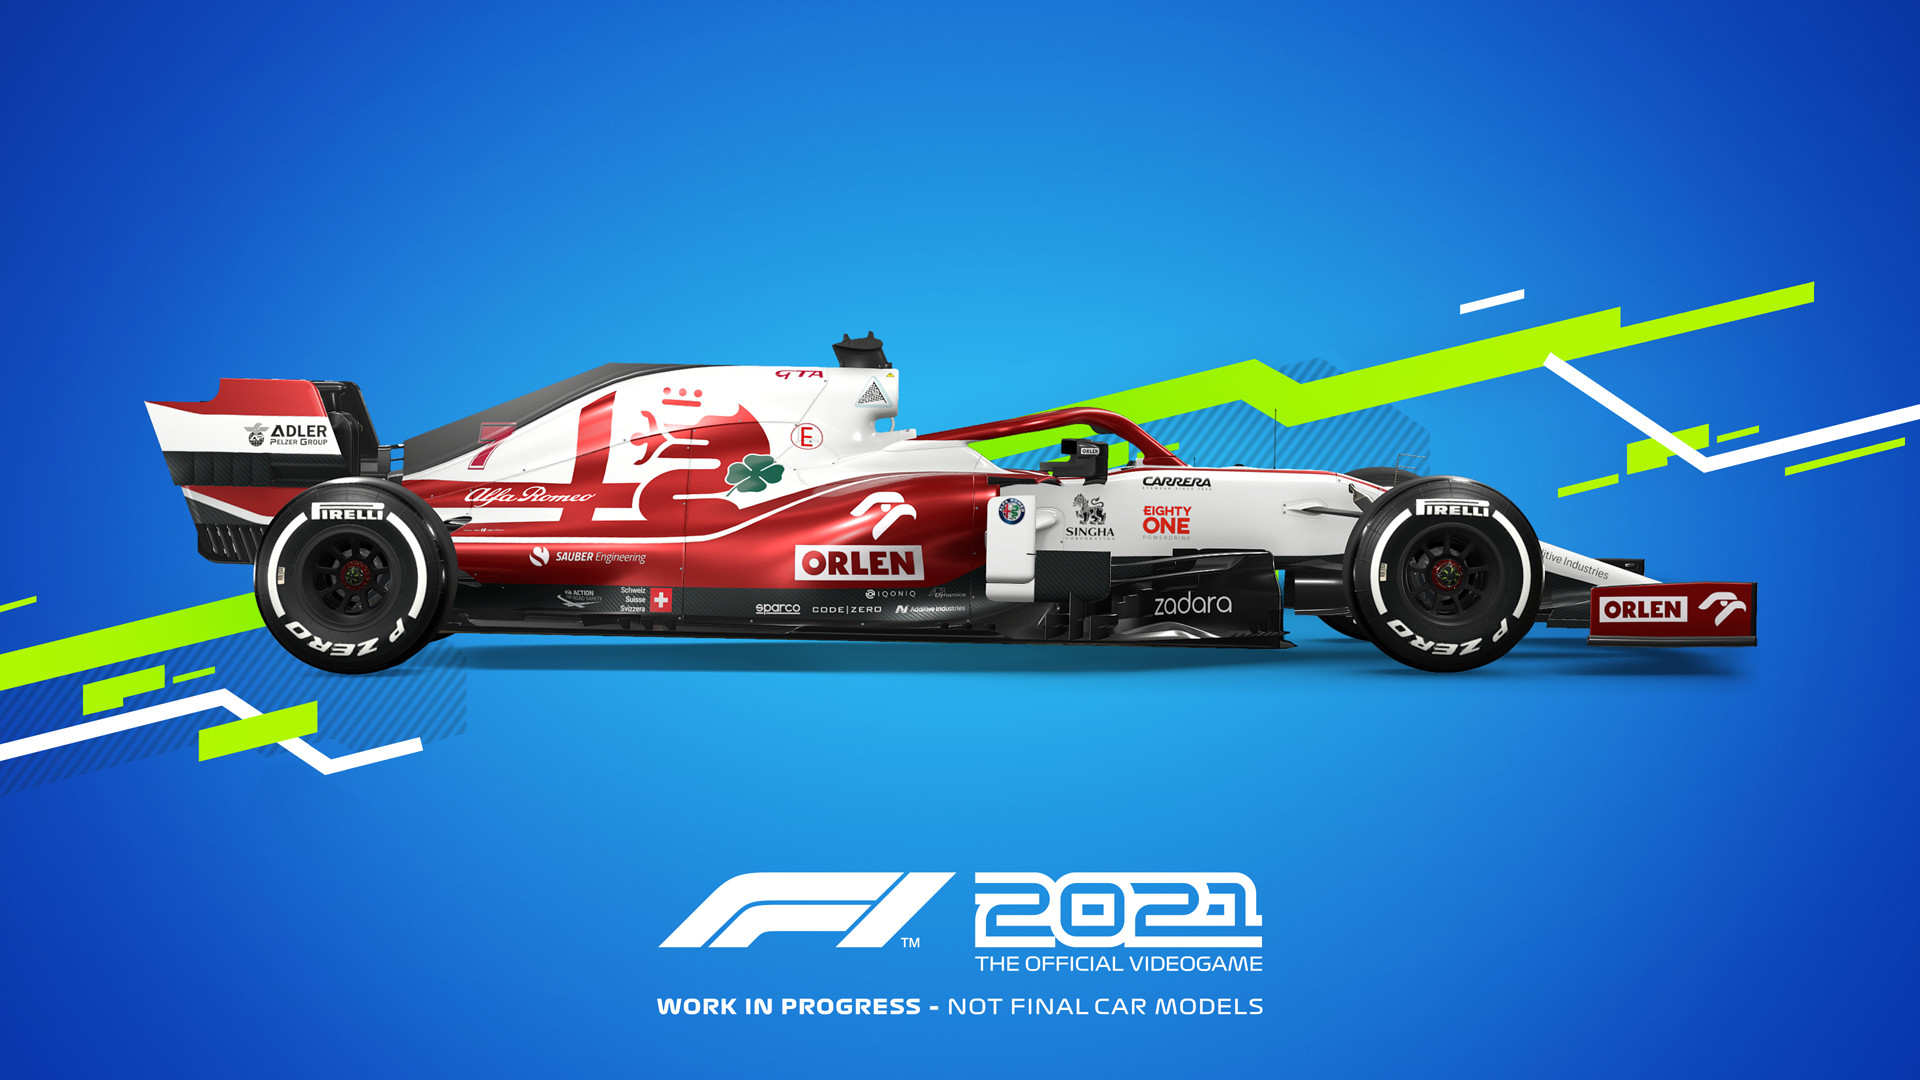 F1 2021 - Pre-order Bonus DLC EU PS4 CD Key